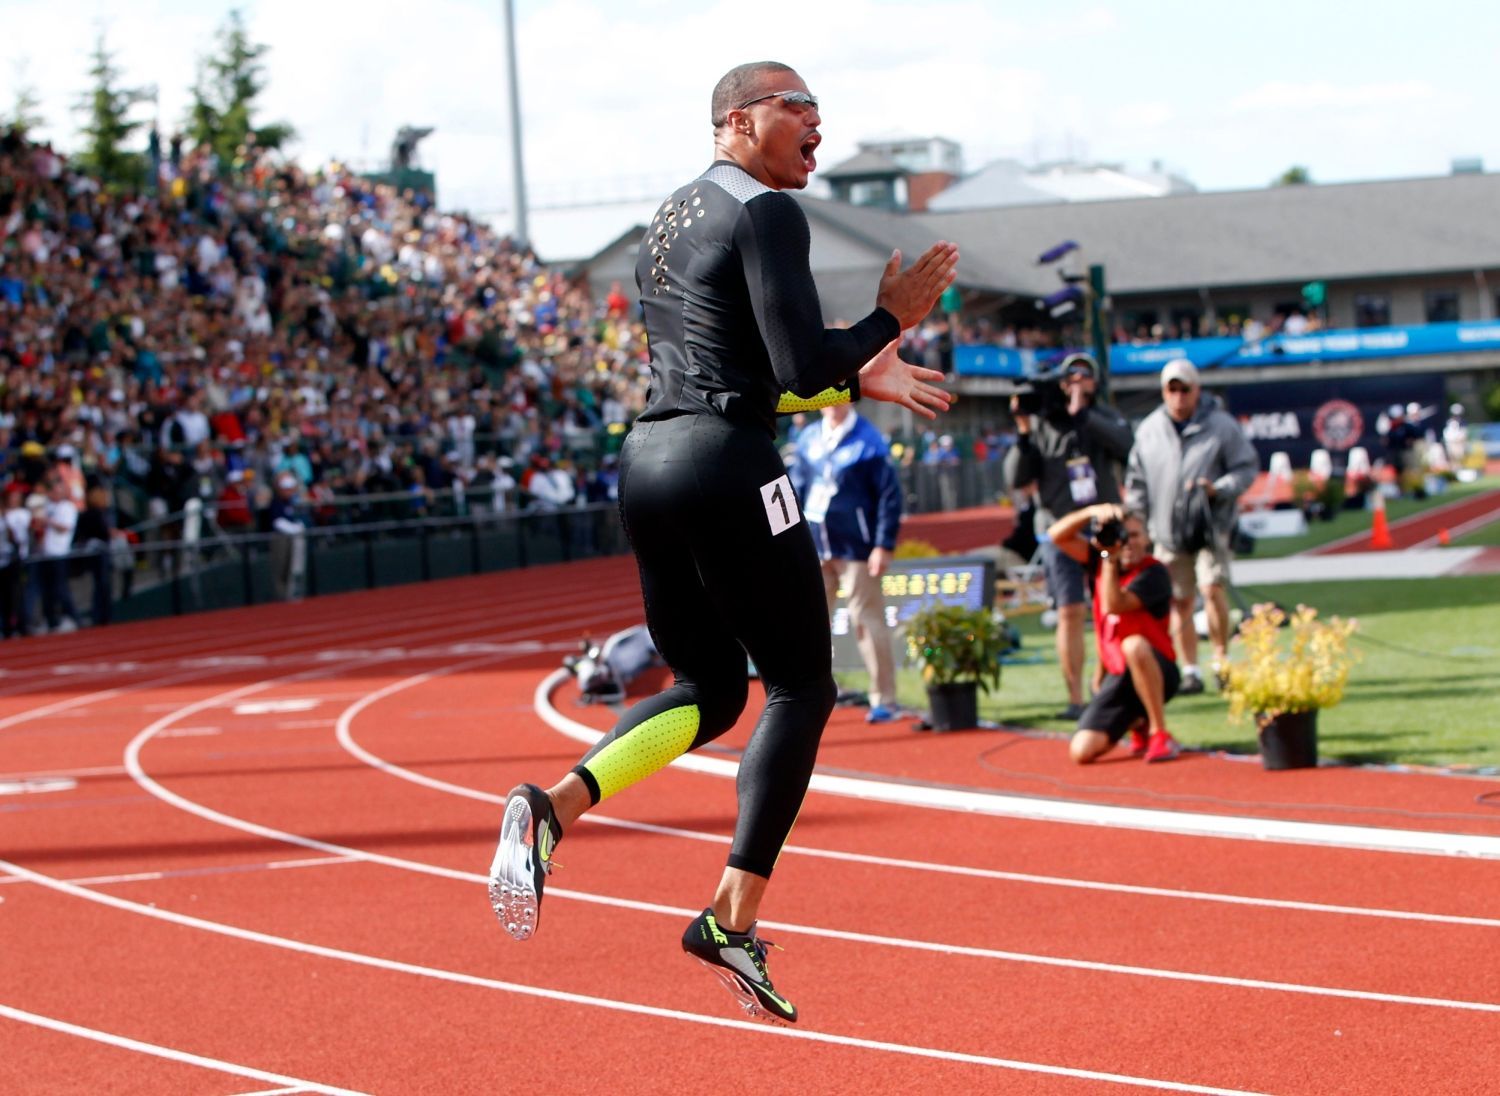 Sprinter Ryan Bailey slaví třetí místo po závodu na 100 metrů během americké kvalifikace v Eugene 2012.